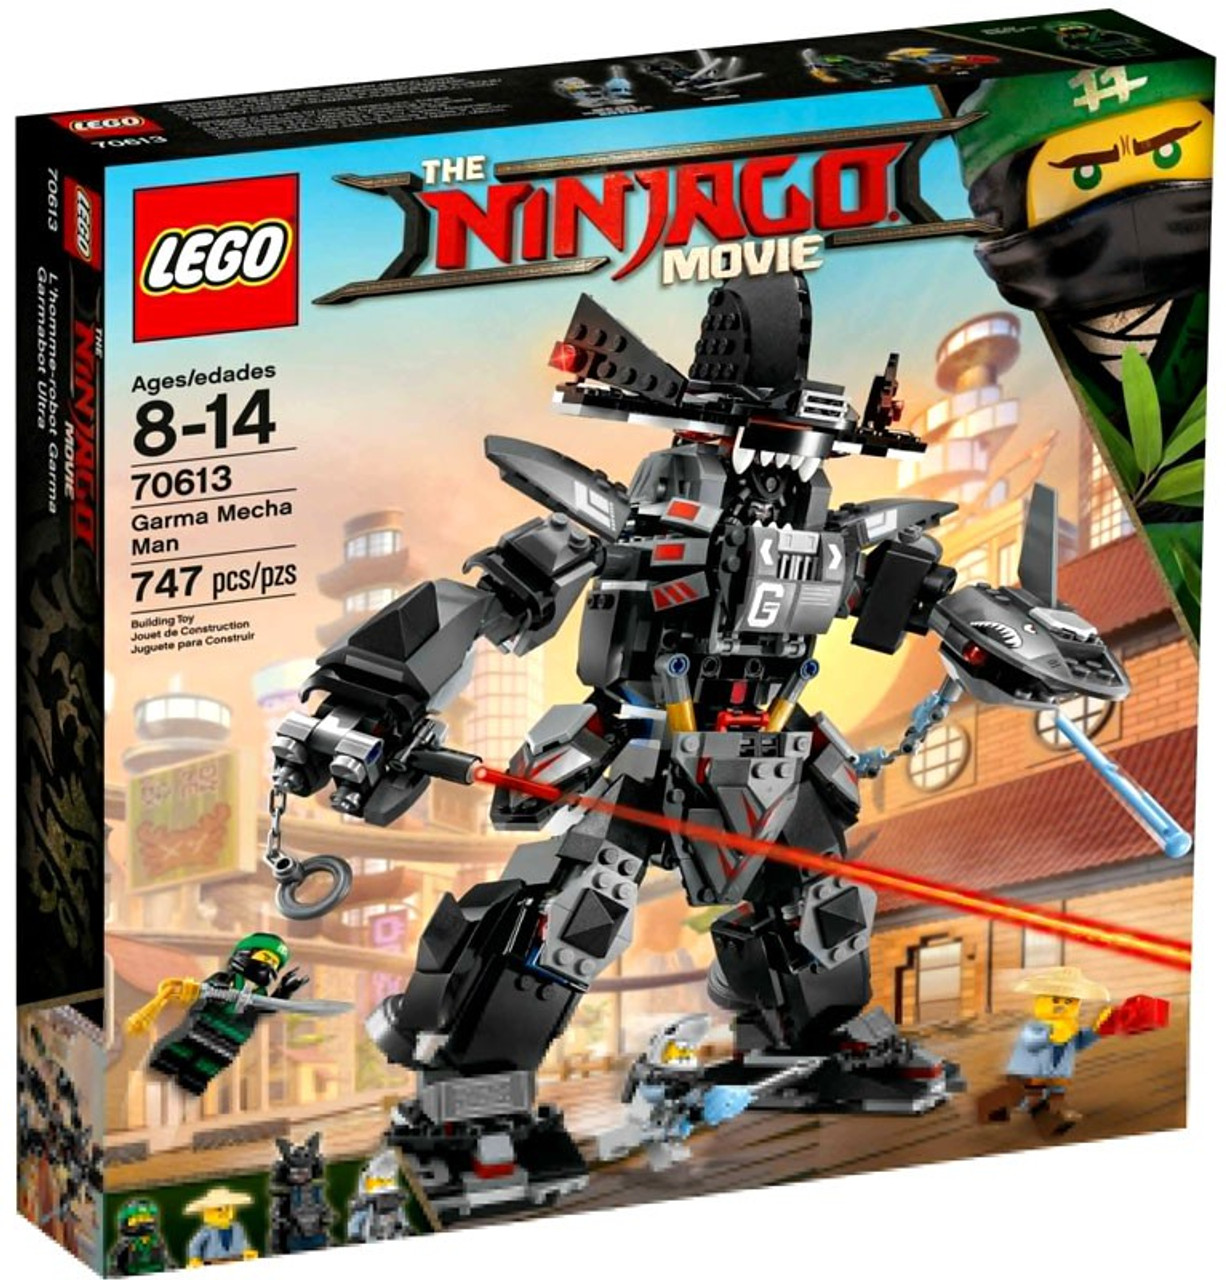 Lego Ninjago Movie Sets : First look at the LEGO Ninjago Movie Sets! - Jay's Brick Blog : More 